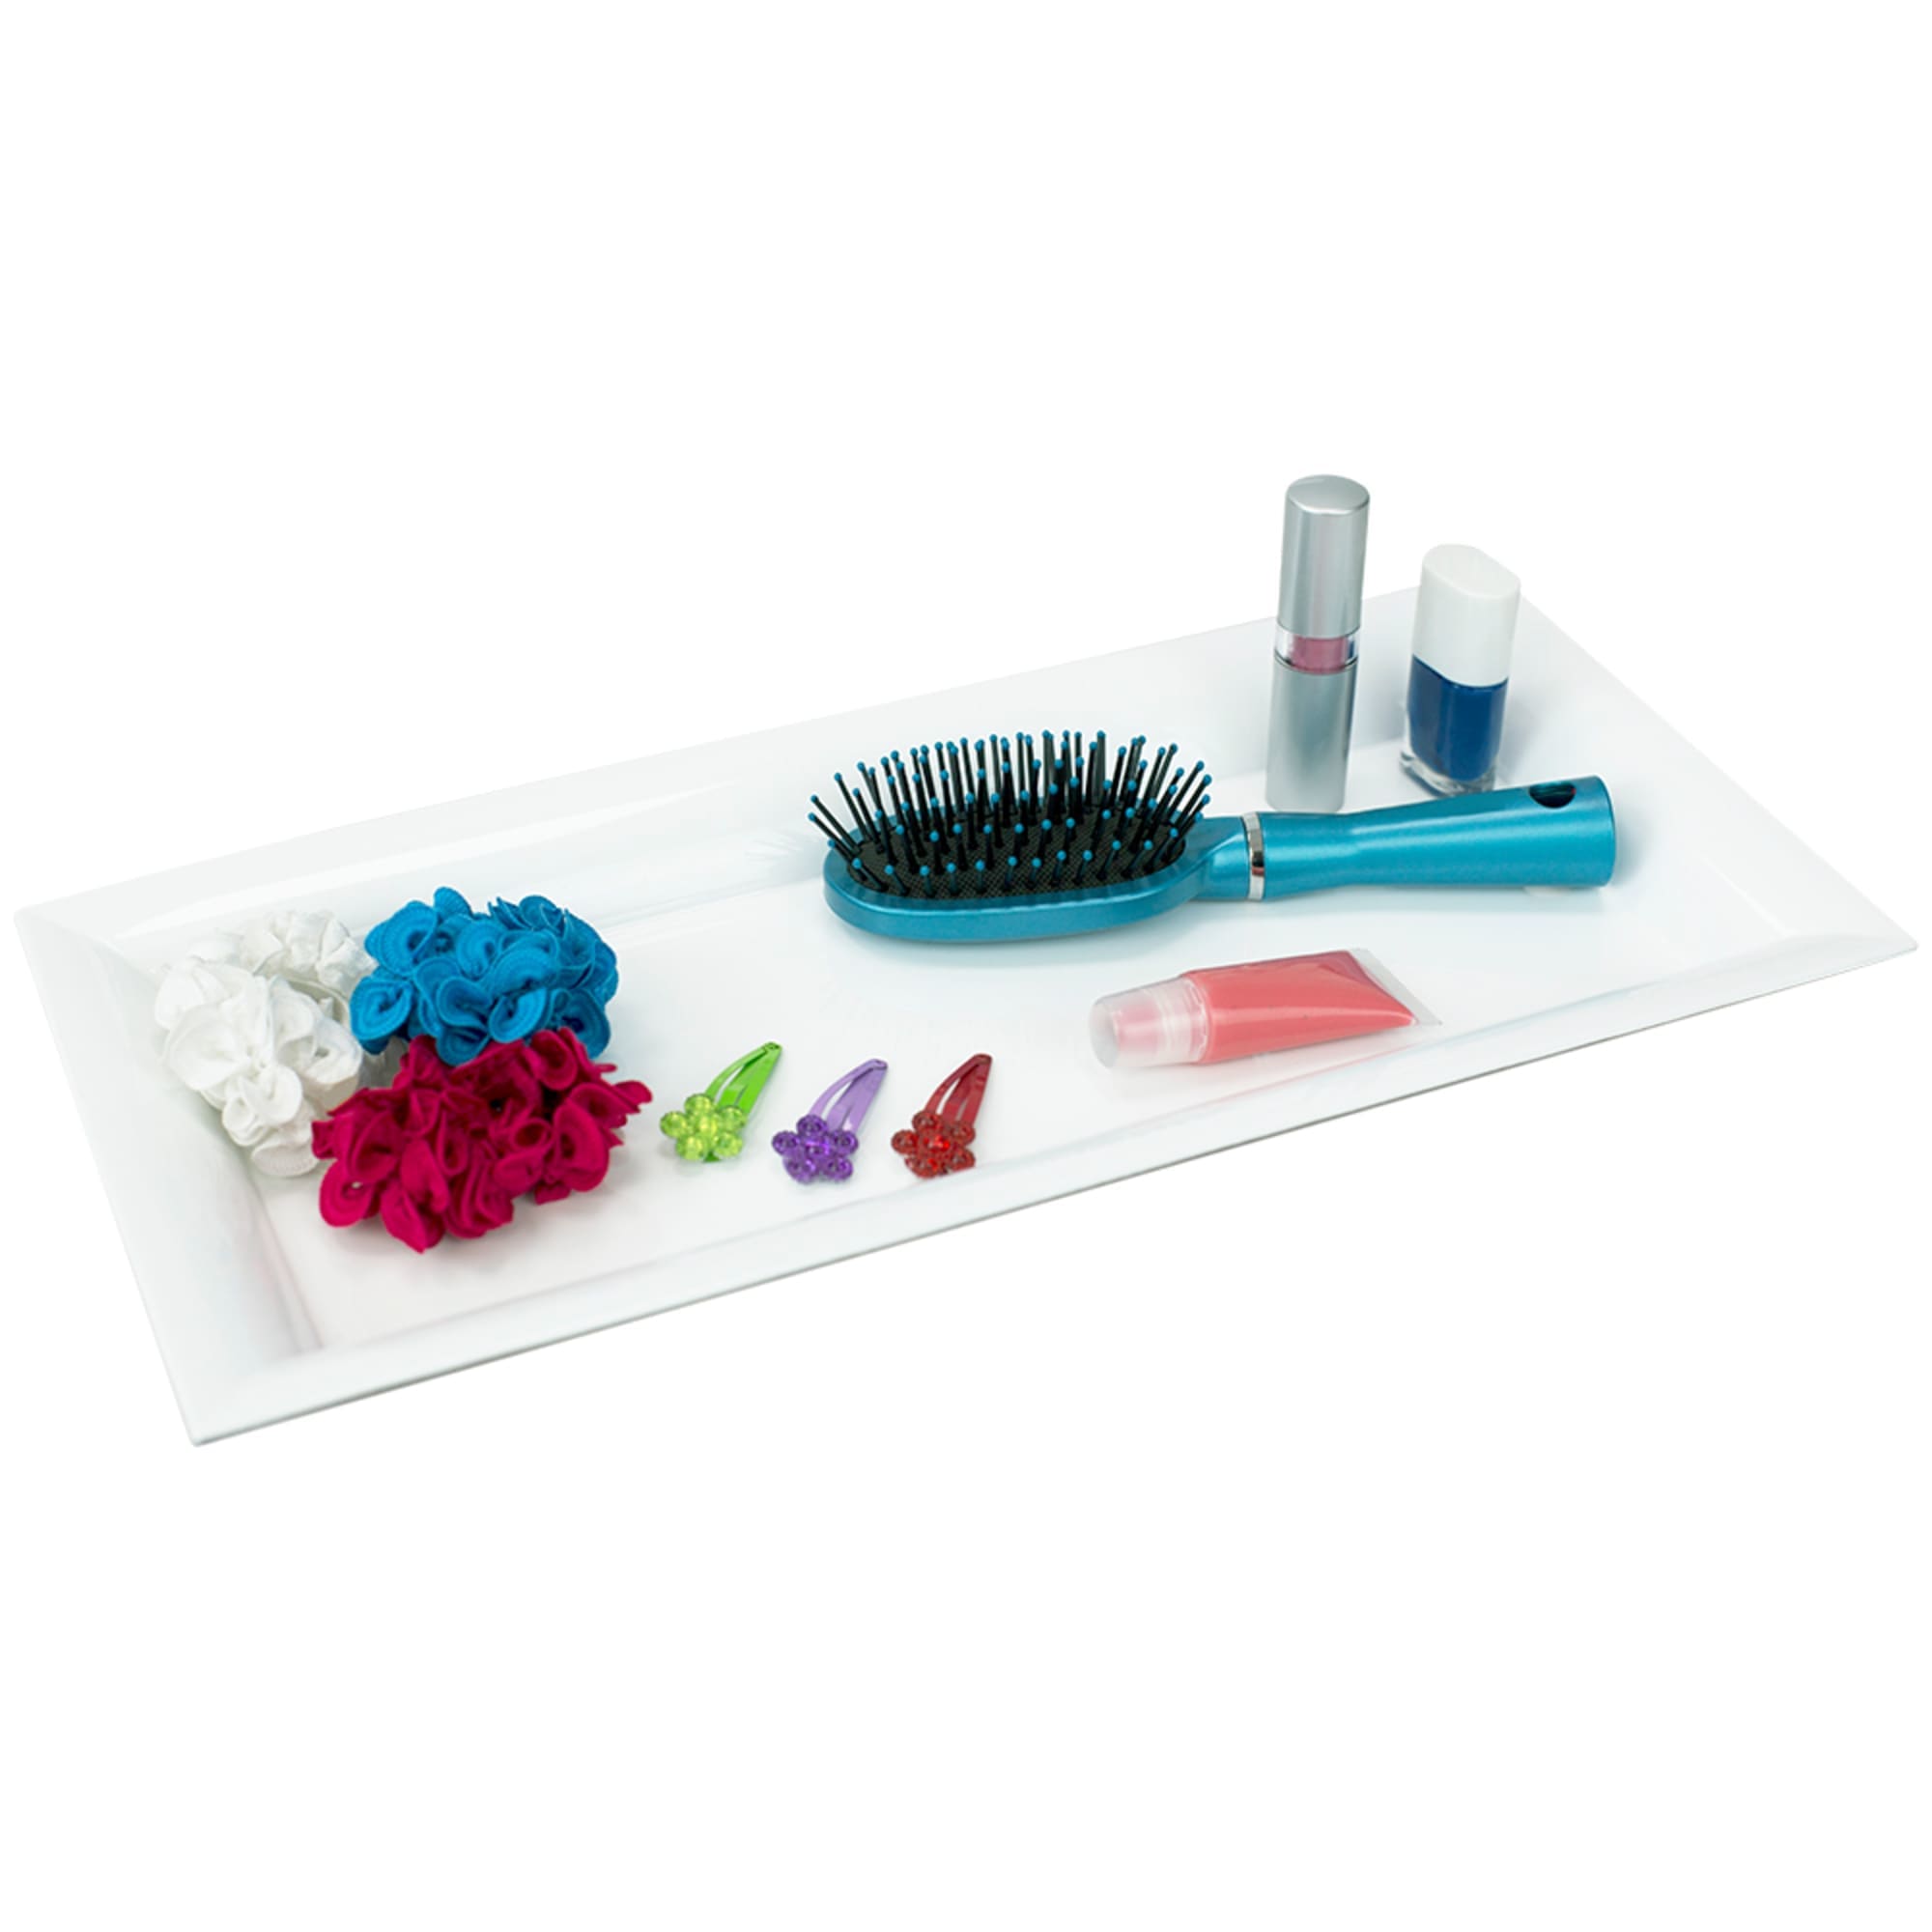 Home Basics Plastic Vanity Tray, White $4.00 EACH, CASE PACK OF 12